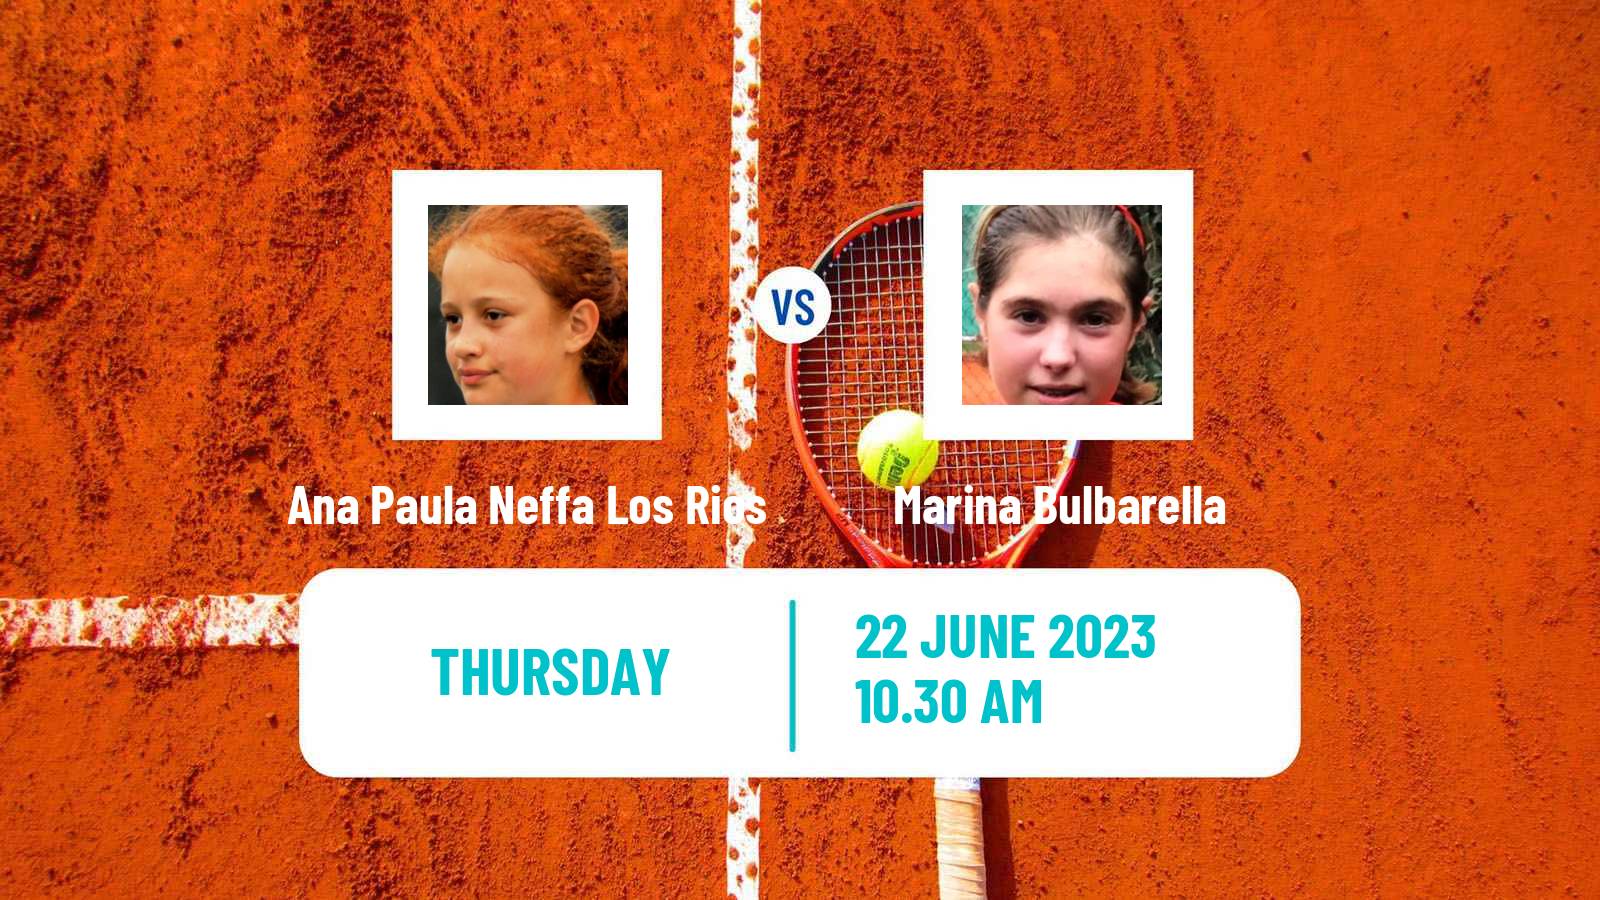 Tennis ITF W15 Buenos Aires Women Ana Paula Neffa Los Rios - Marina Bulbarella